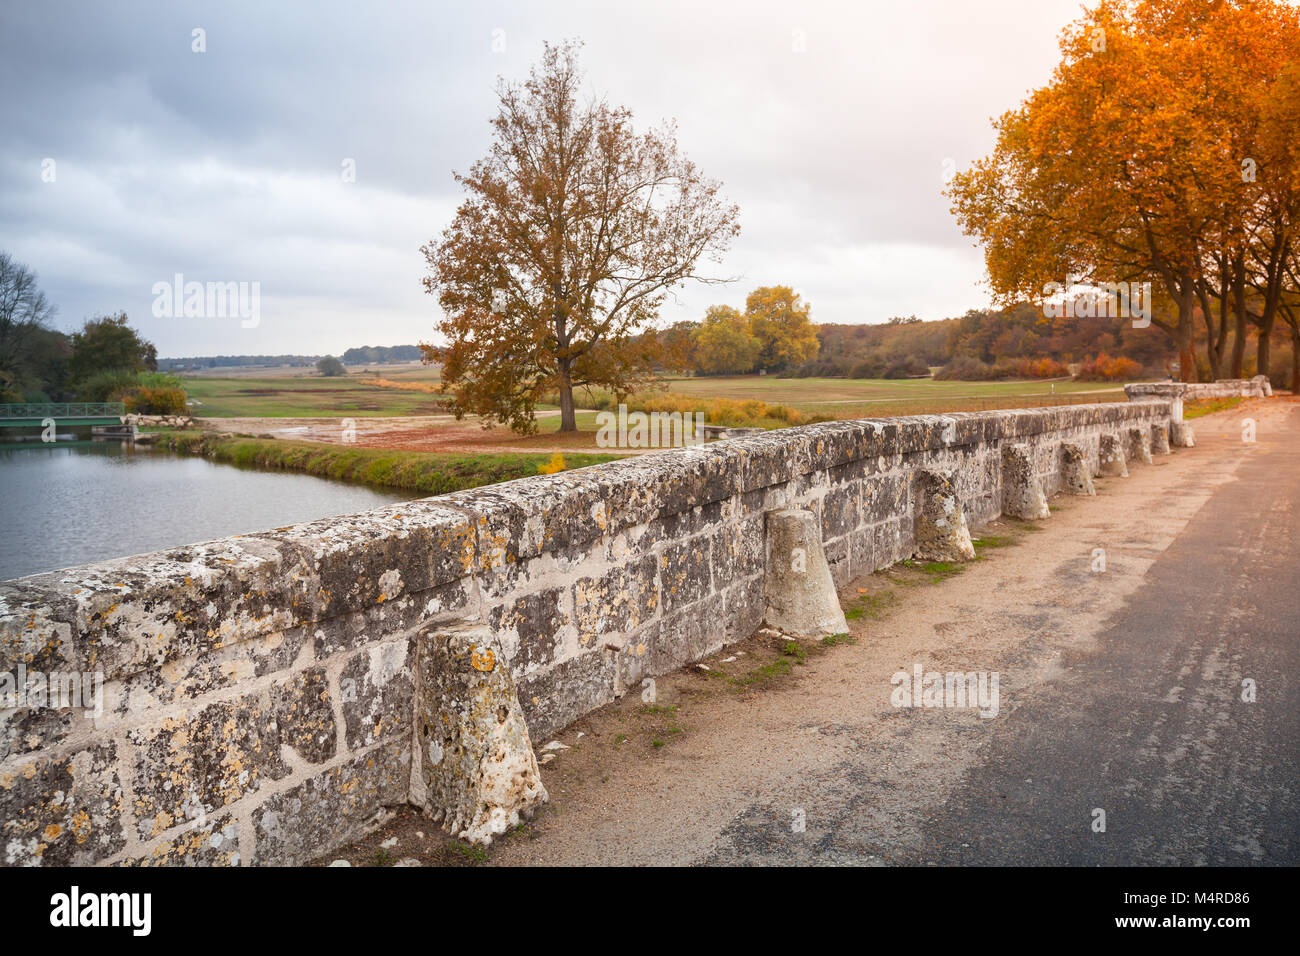 Le paysage du parc français, vieux pont de pierre sur la route et les arbres d'automne Banque D'Images